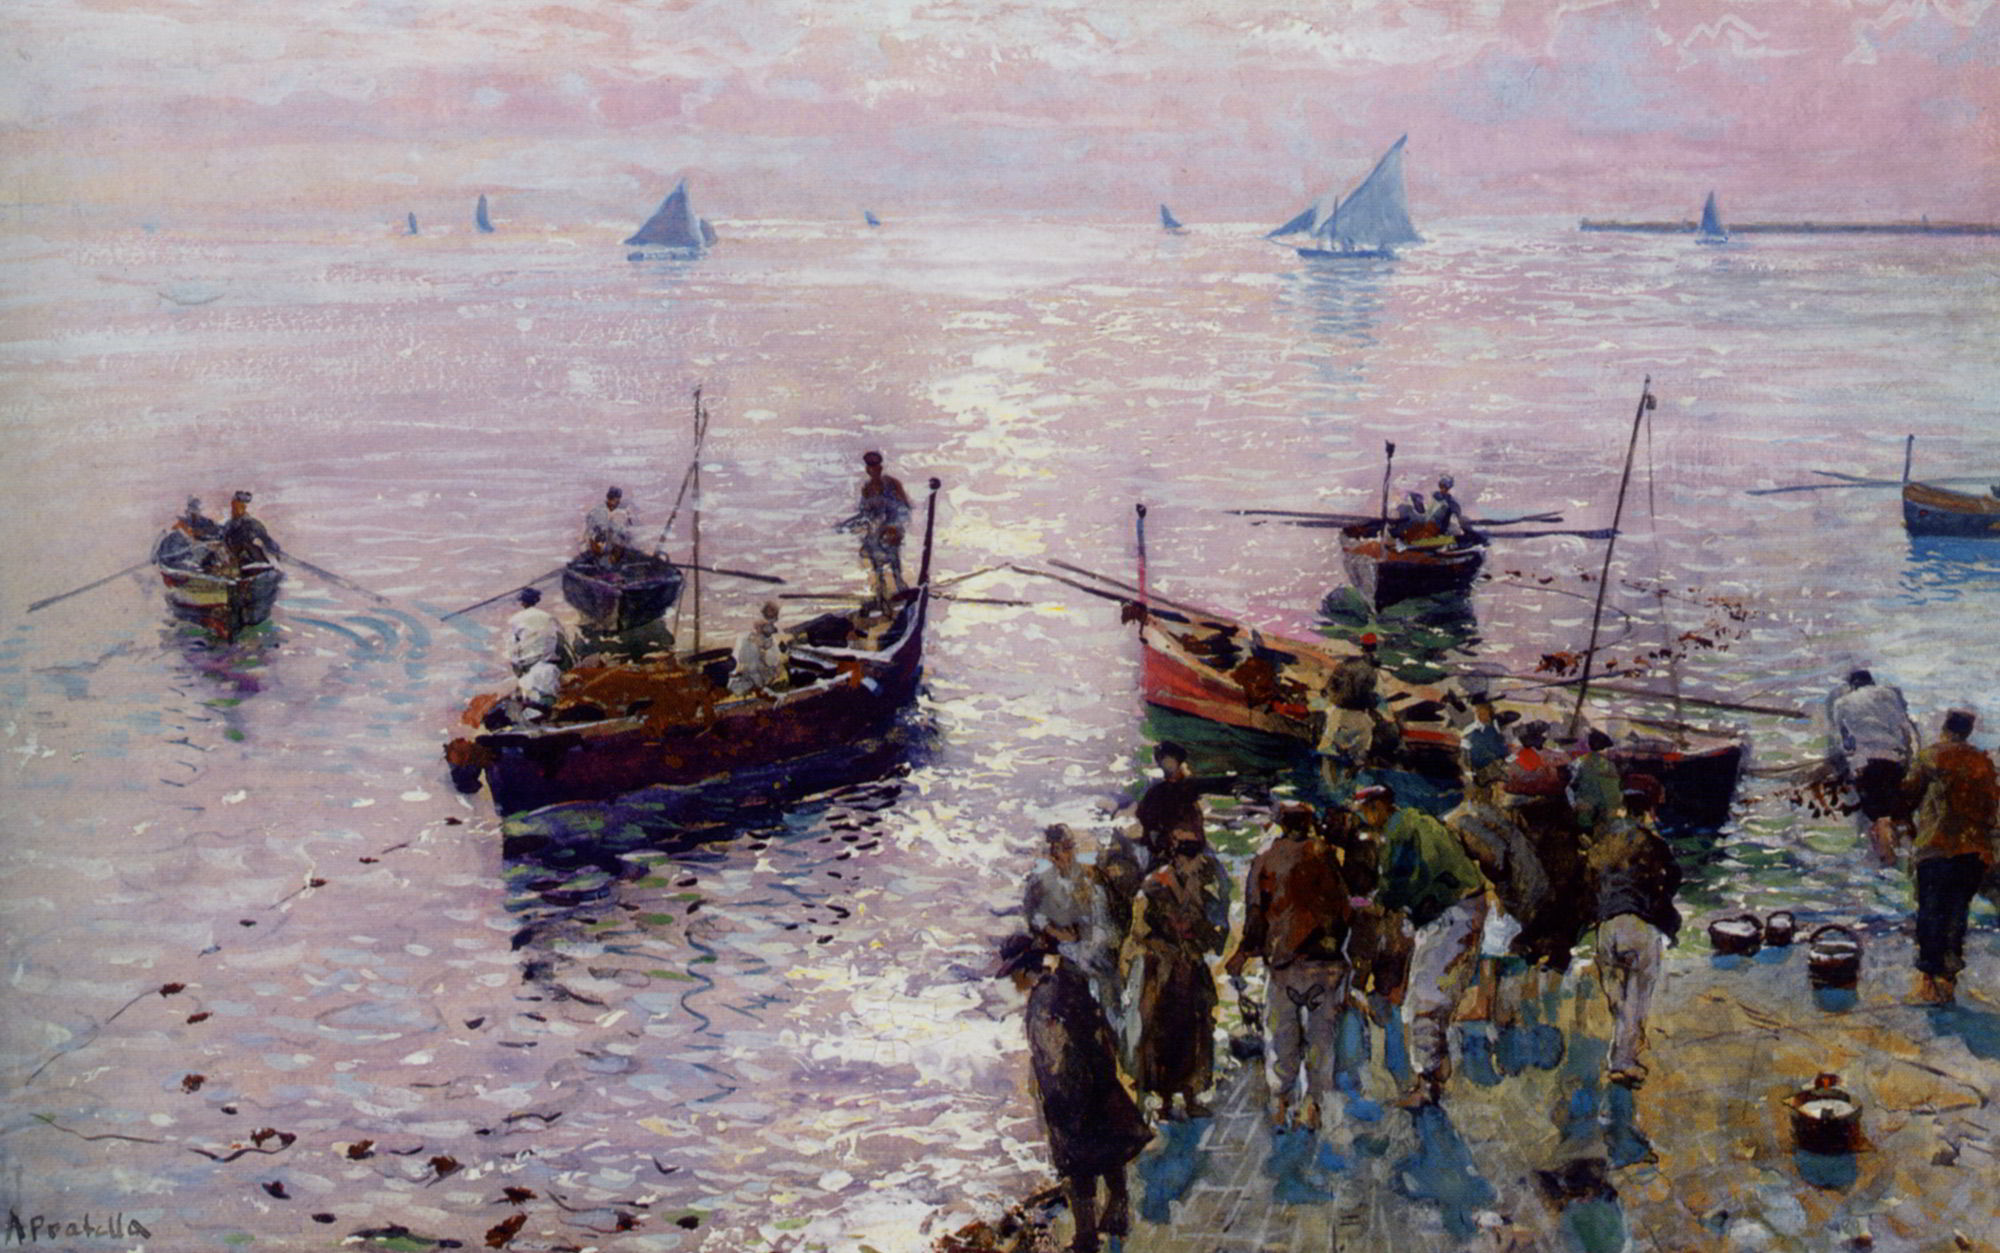 Loading The Boats at Dawn by Attilio Pratella